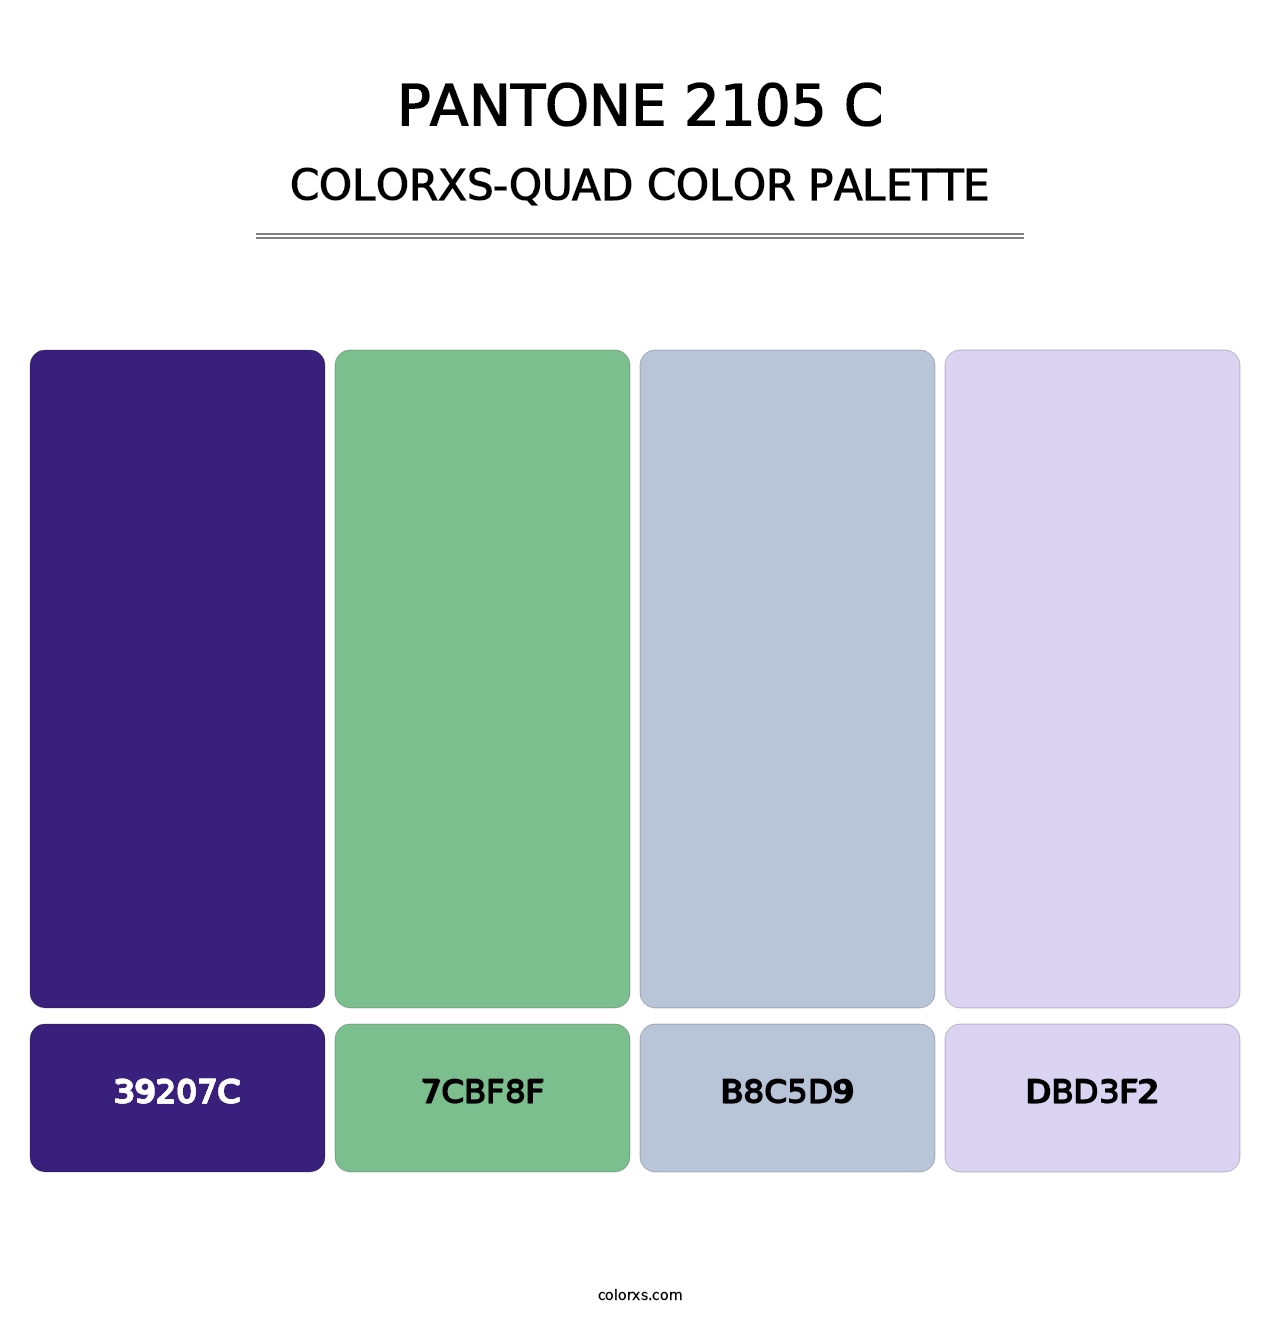 PANTONE 2105 C - Colorxs Quad Palette